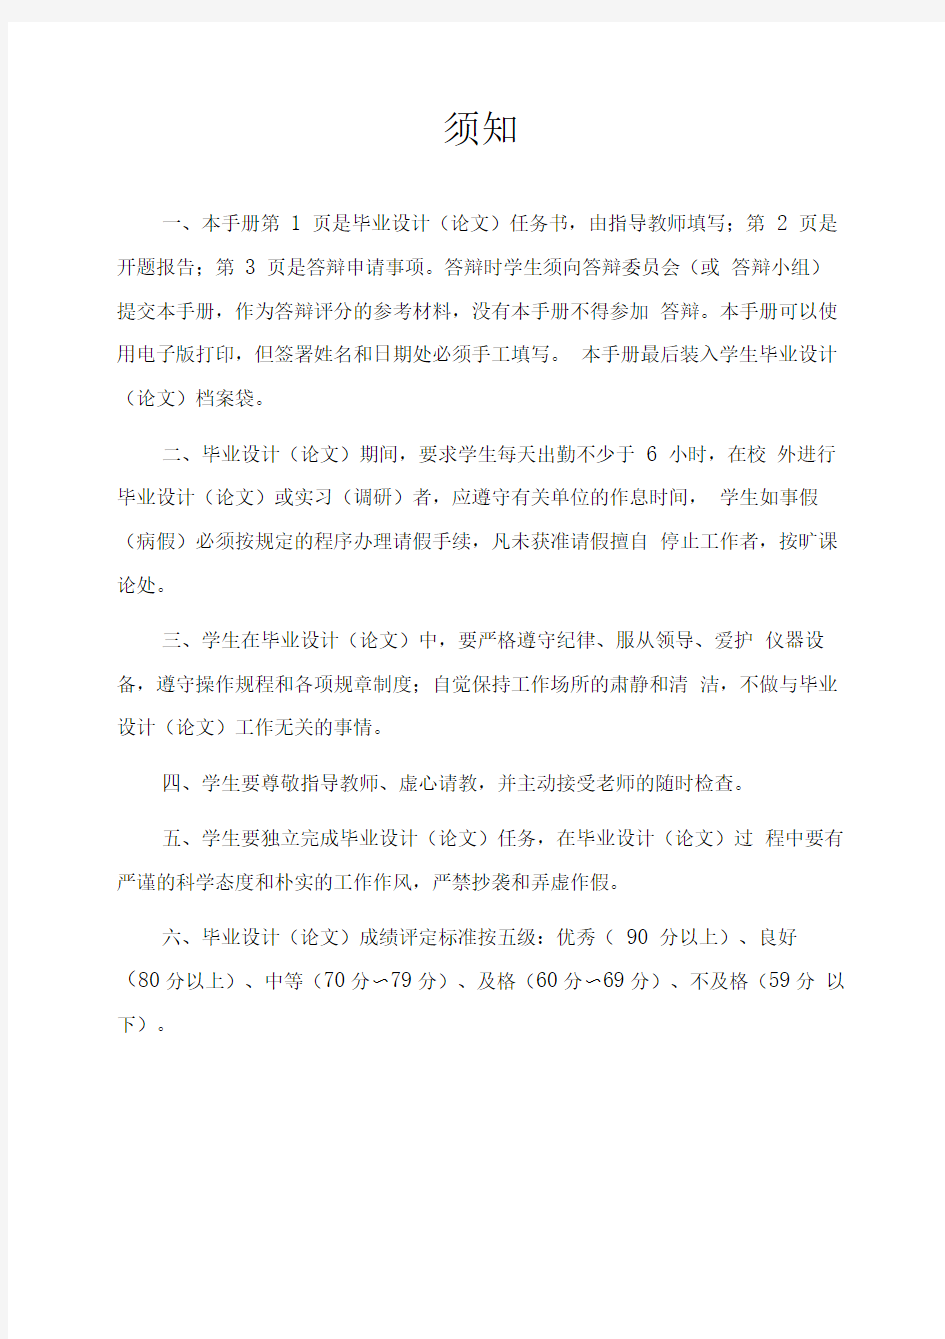 基于TesseractOCR和Baidu语音的证件识别系统毕业设计开题报告